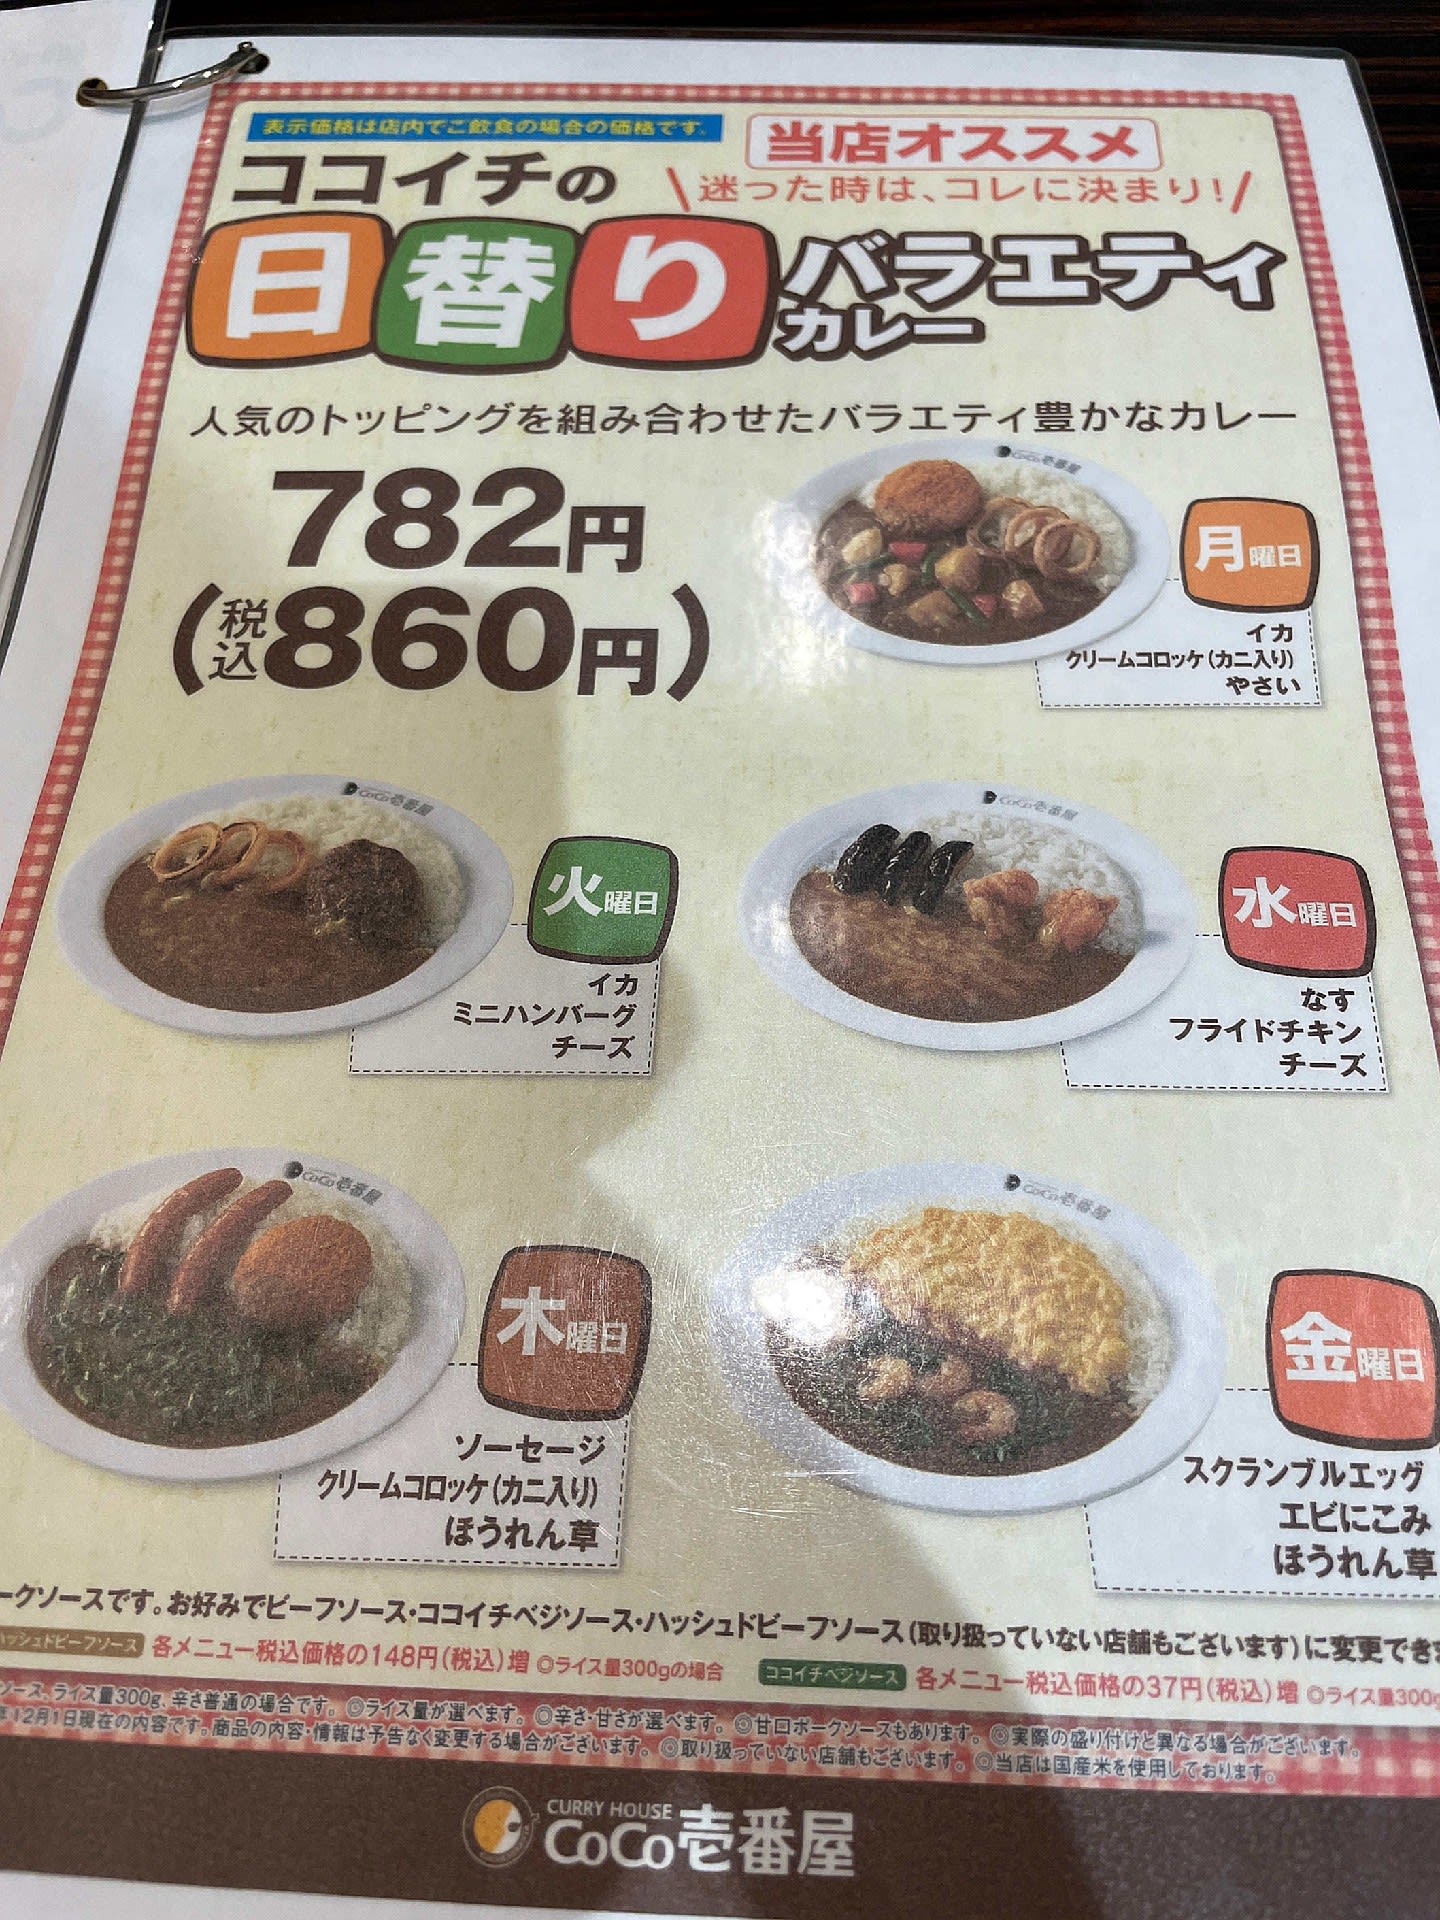 カレーハウスcoco壱番屋 昭和区荒畑店 おじさんの外食